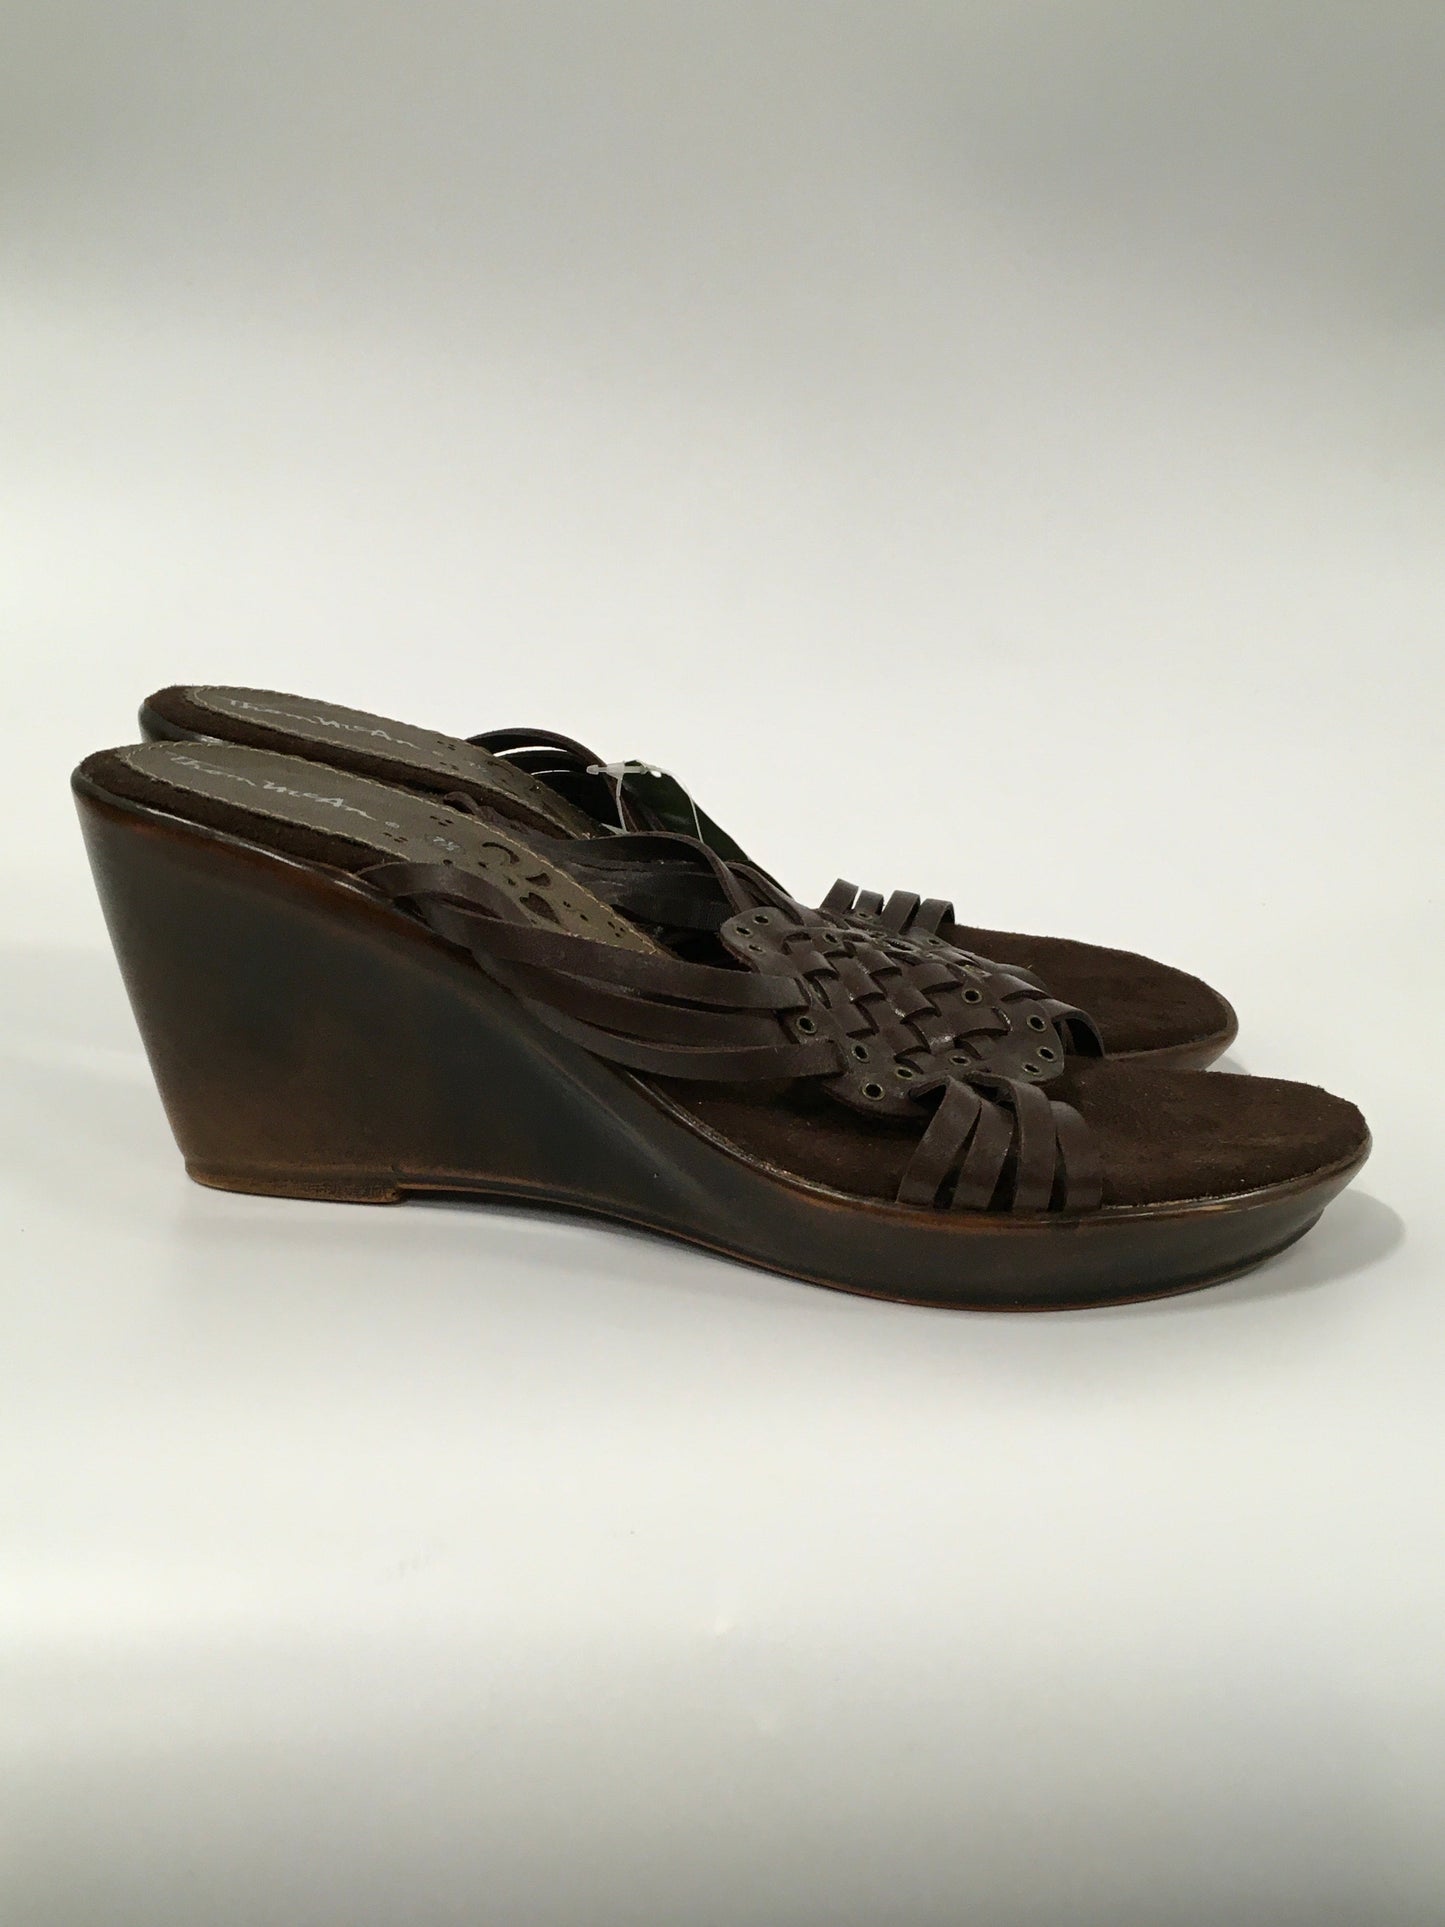 Brown Sandals Heels Wedge Thom Mccann, Size 7.5